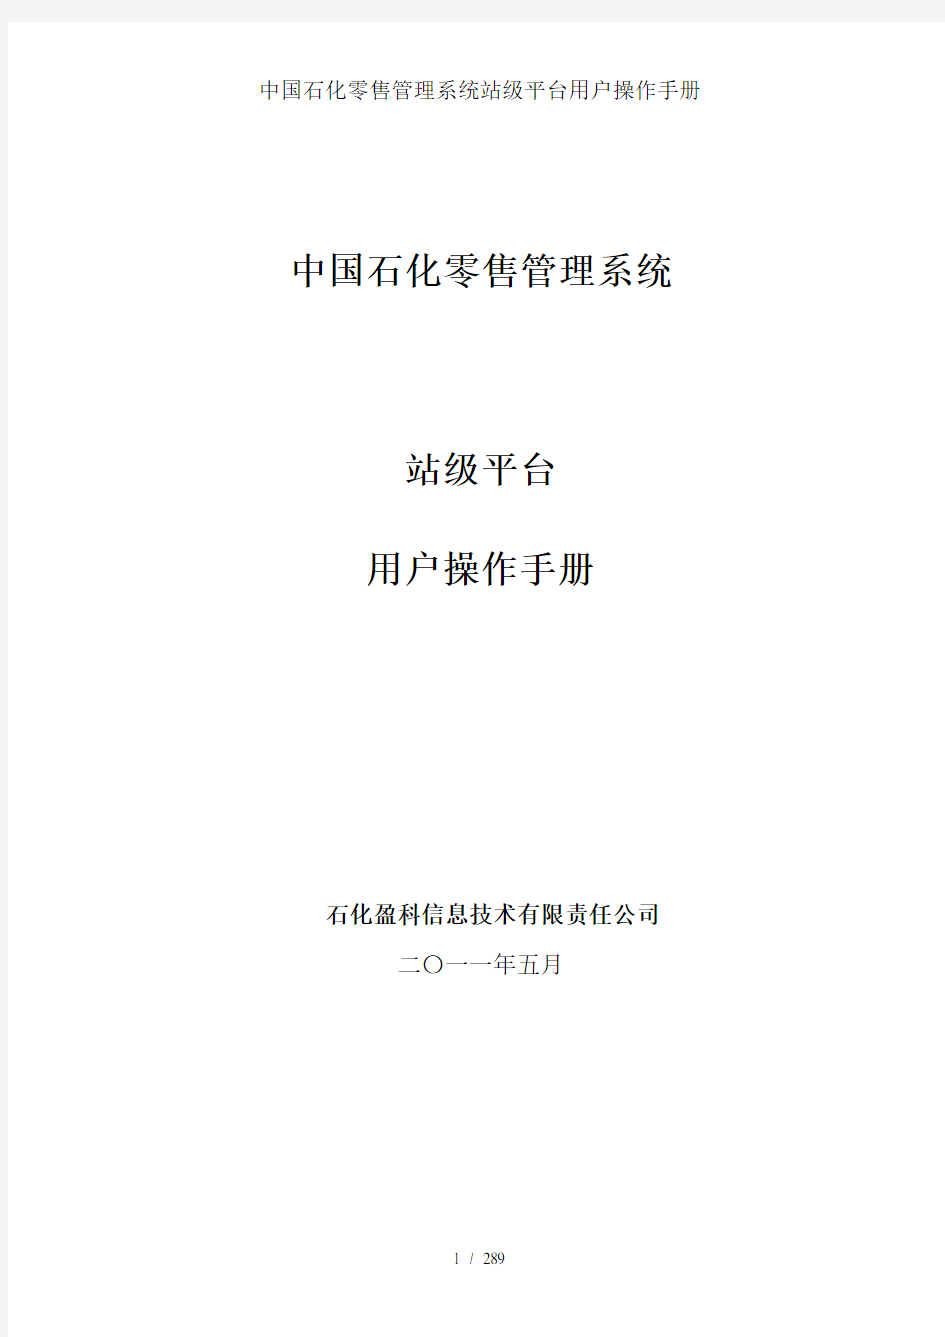 中国石化零售管理系统站级平台用户操作手册